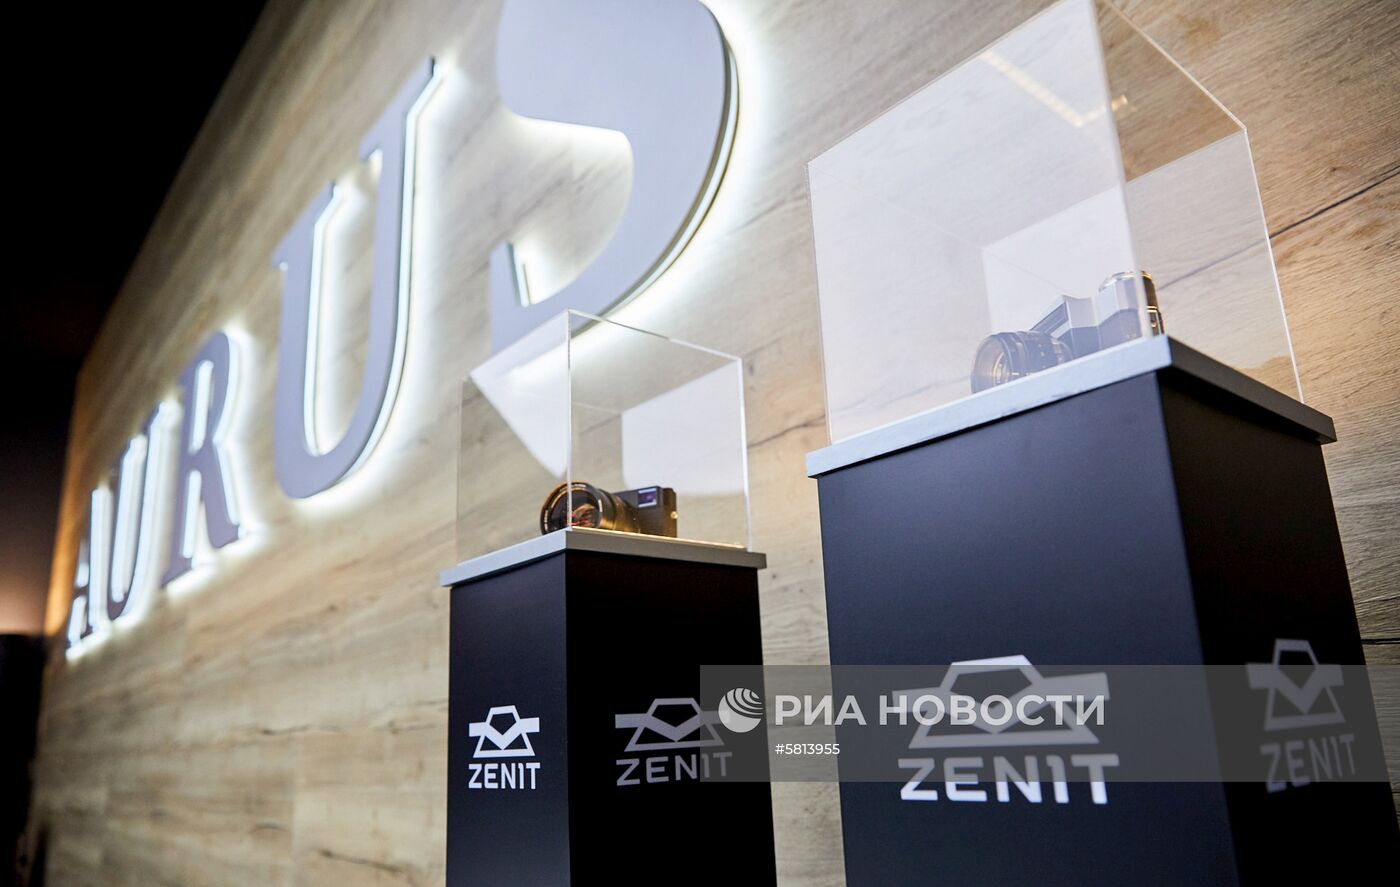 Фотоаппарат Zenit M был показан на Женевском автосалоне